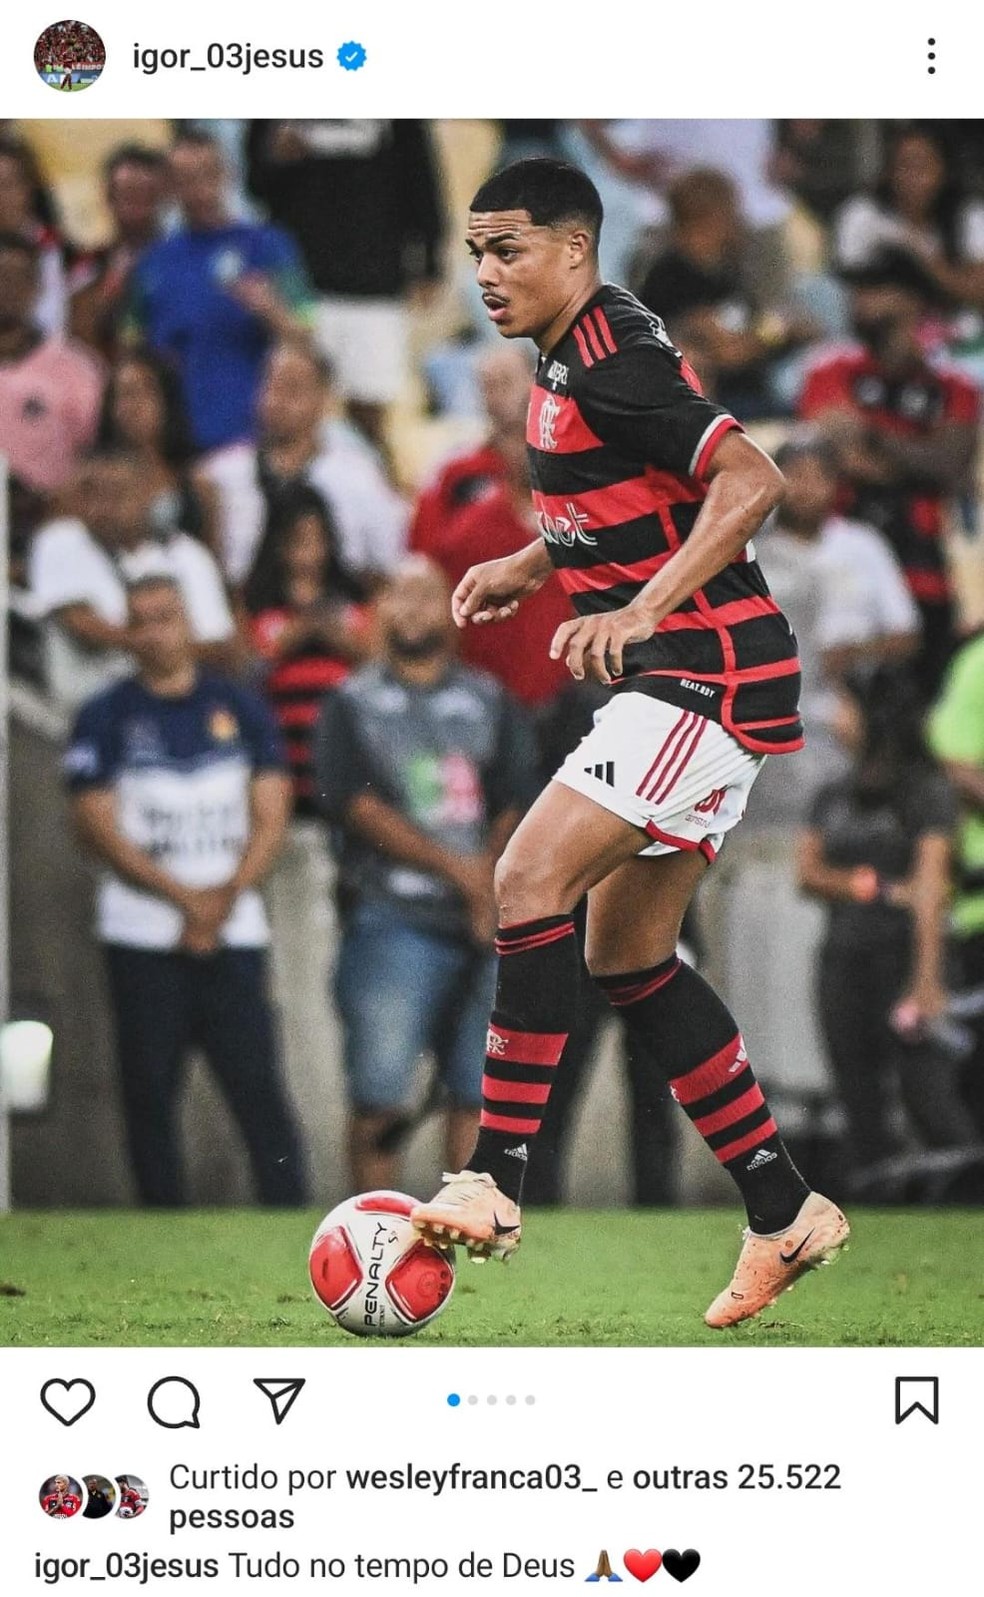 Postagem de Igor Jesus, do Flamengo, no Instagram